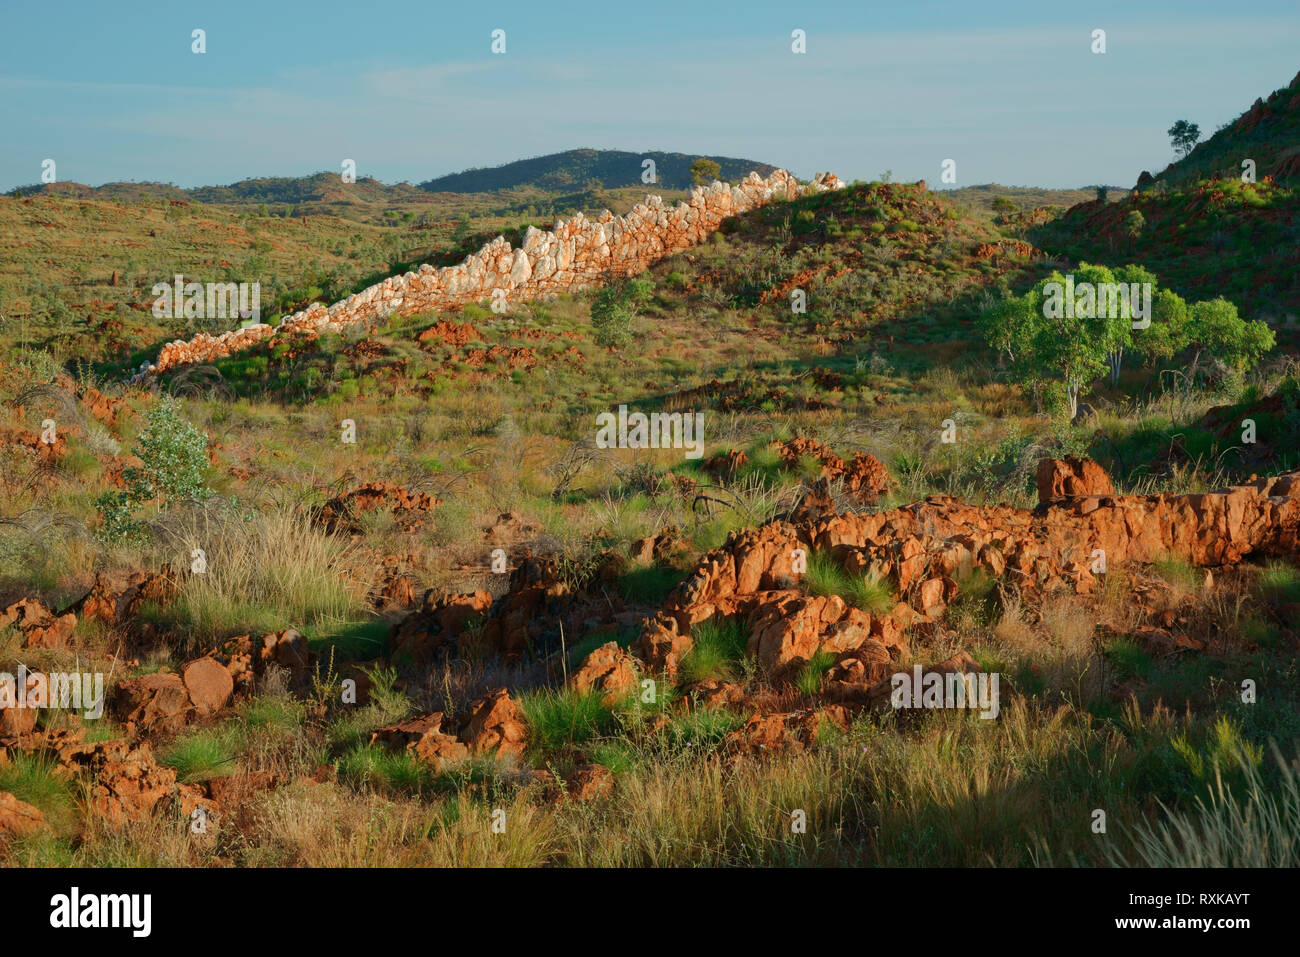 La Chine, blanc naturel mur mur de pierre. Ressemble à un grand mur de la Chine. Halls Creek, le Kimberley, Western Australia, Australie Territoire. Banque D'Images